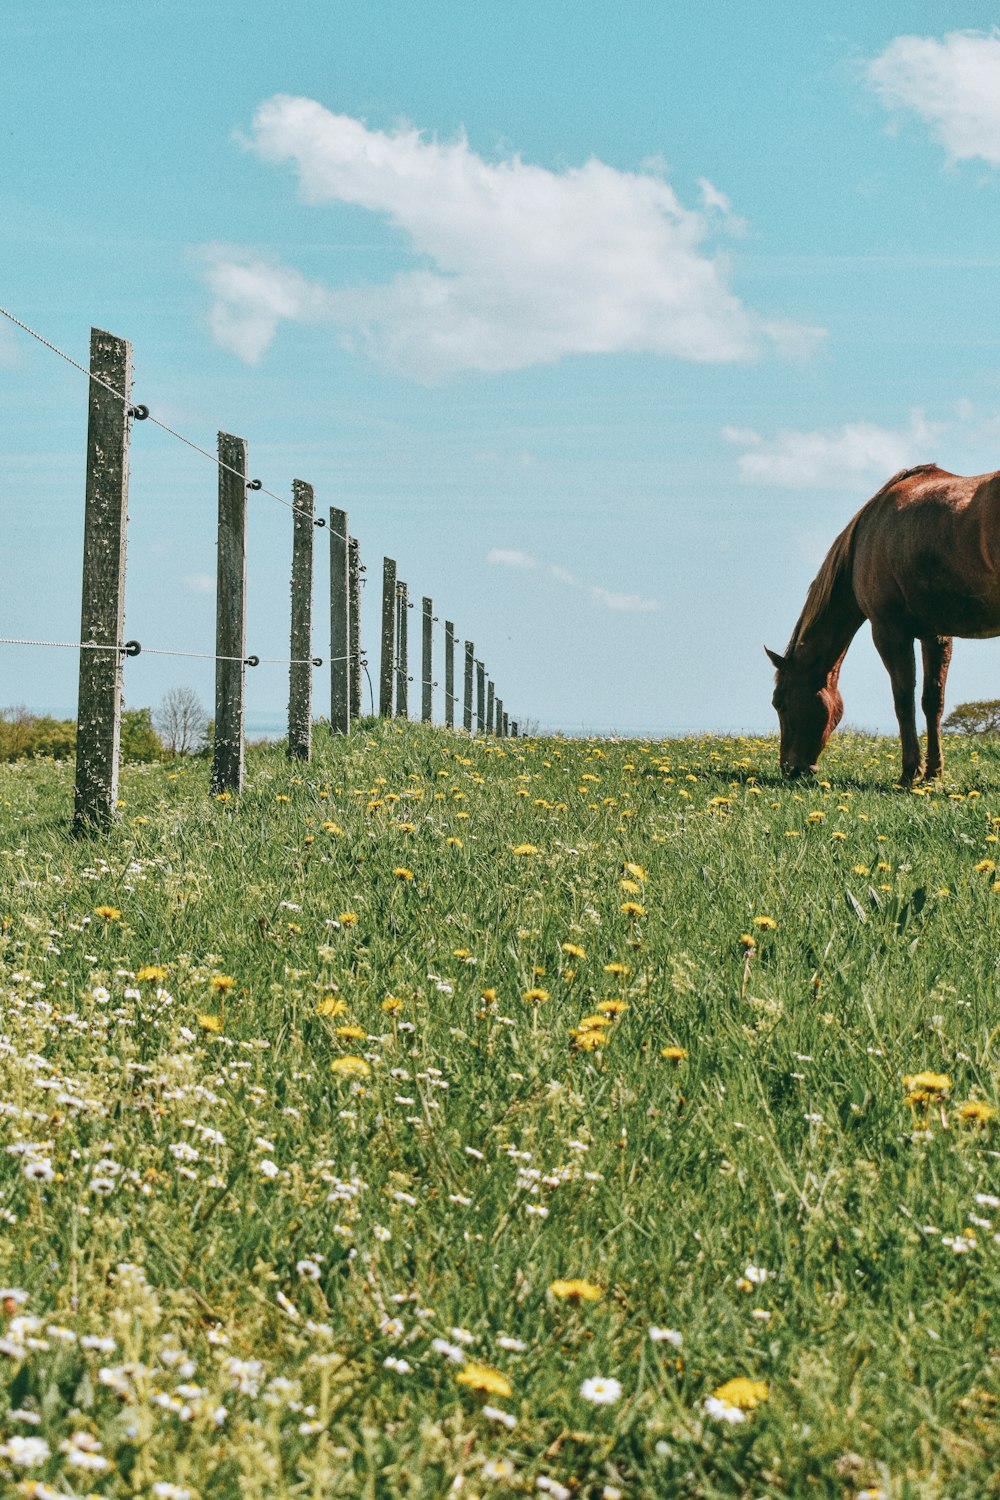 cavalo marrom comendo grama no campo de grama verde durante o dia